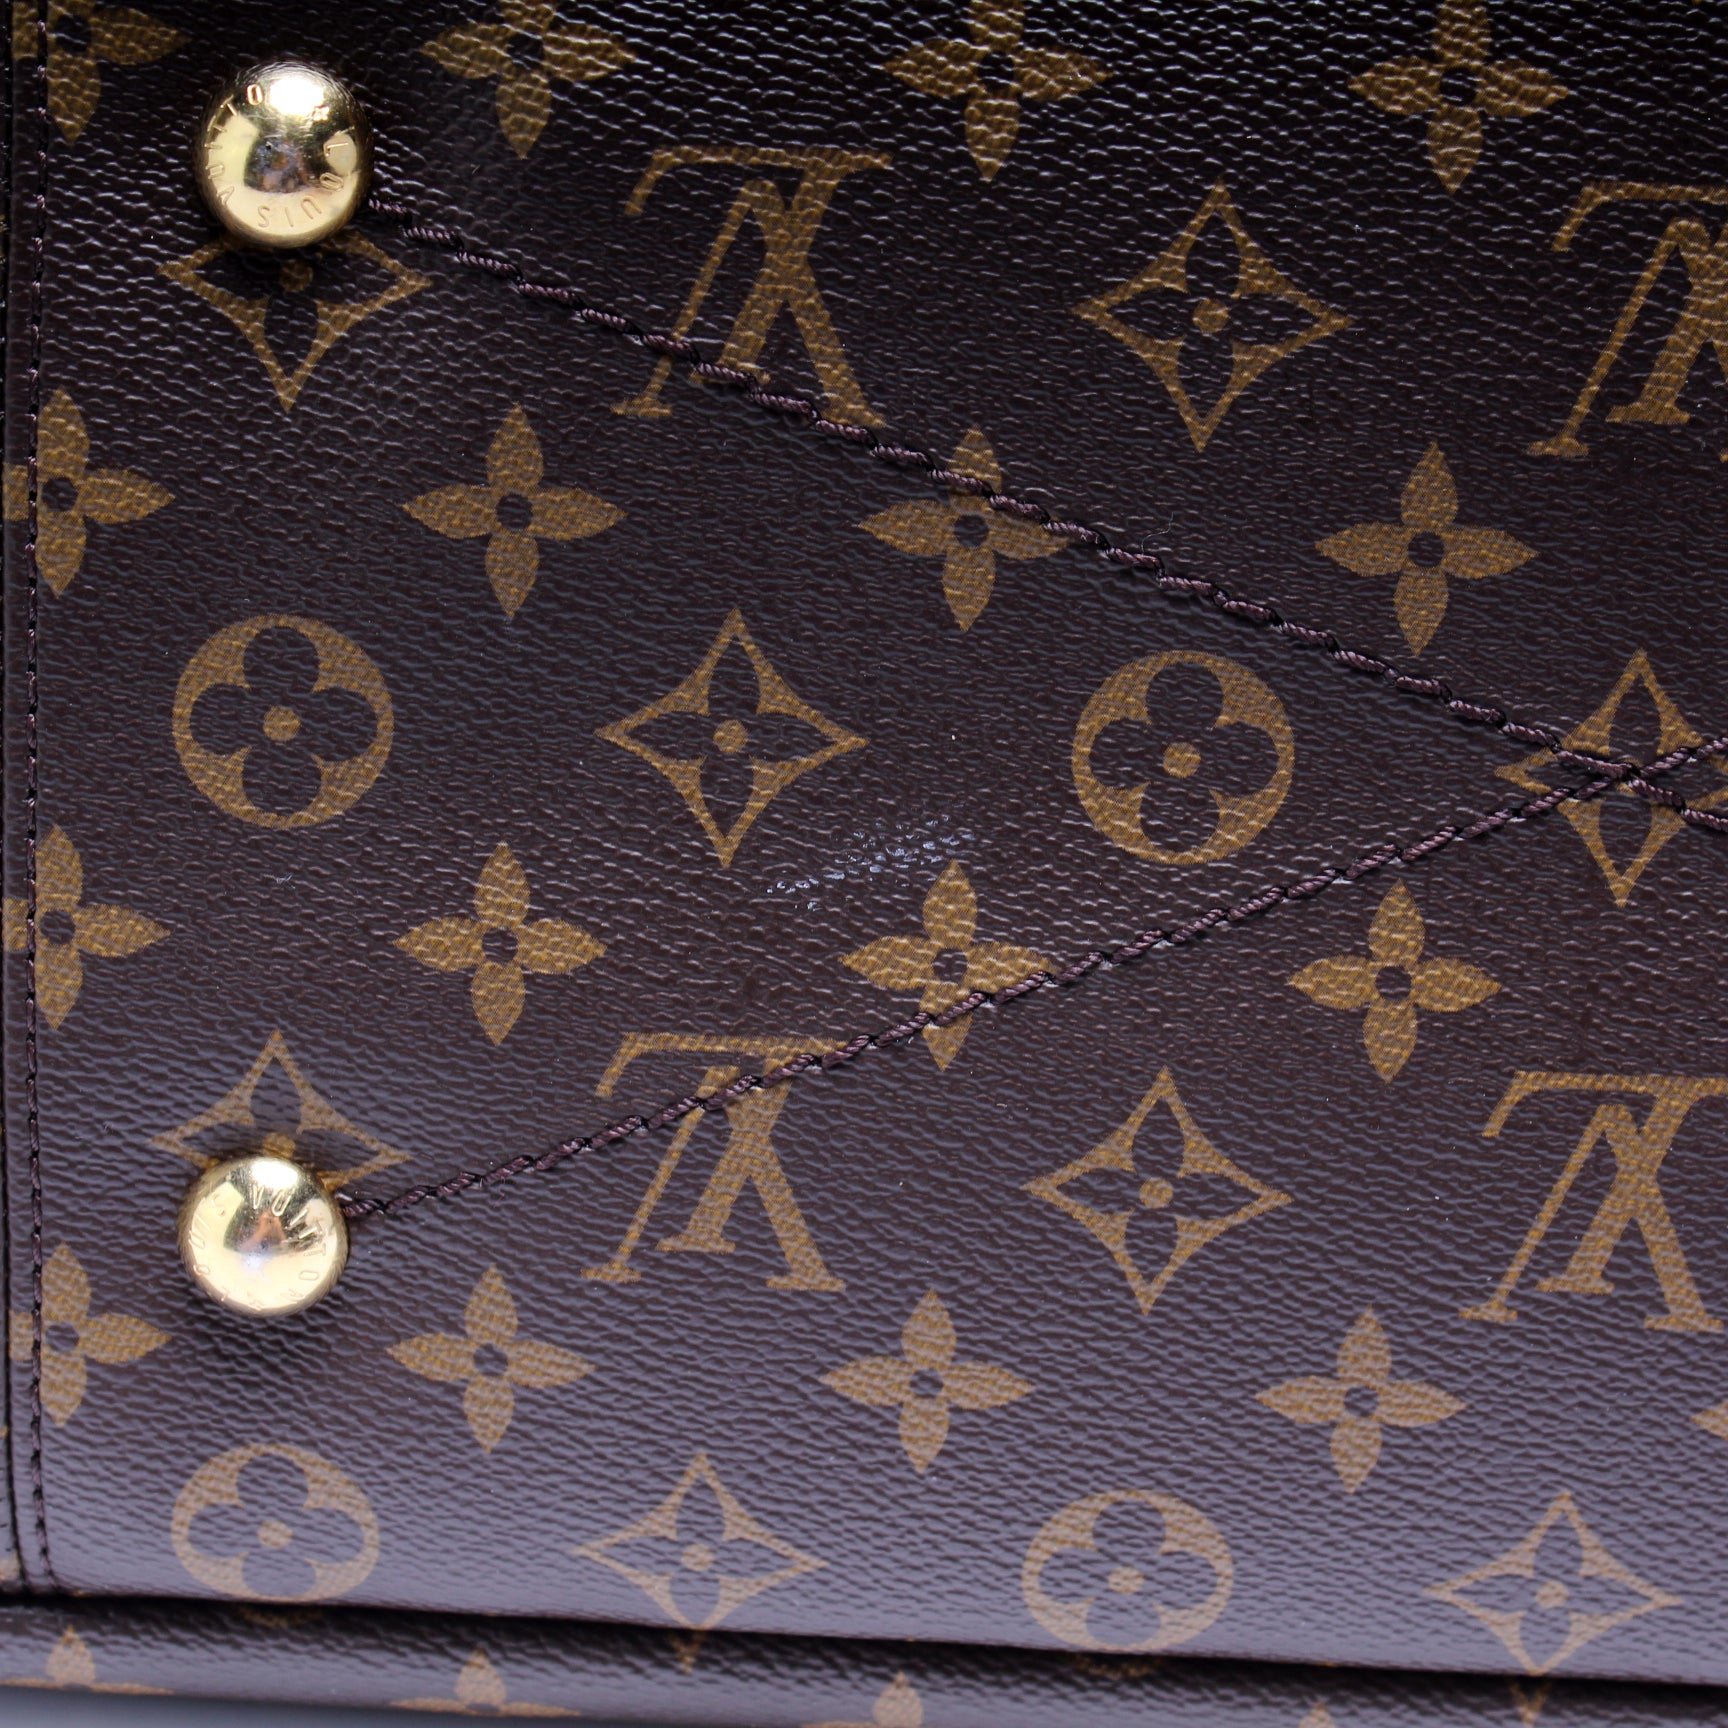 Artsy cloth handbag Louis Vuitton Beige in Fabric - 29627684